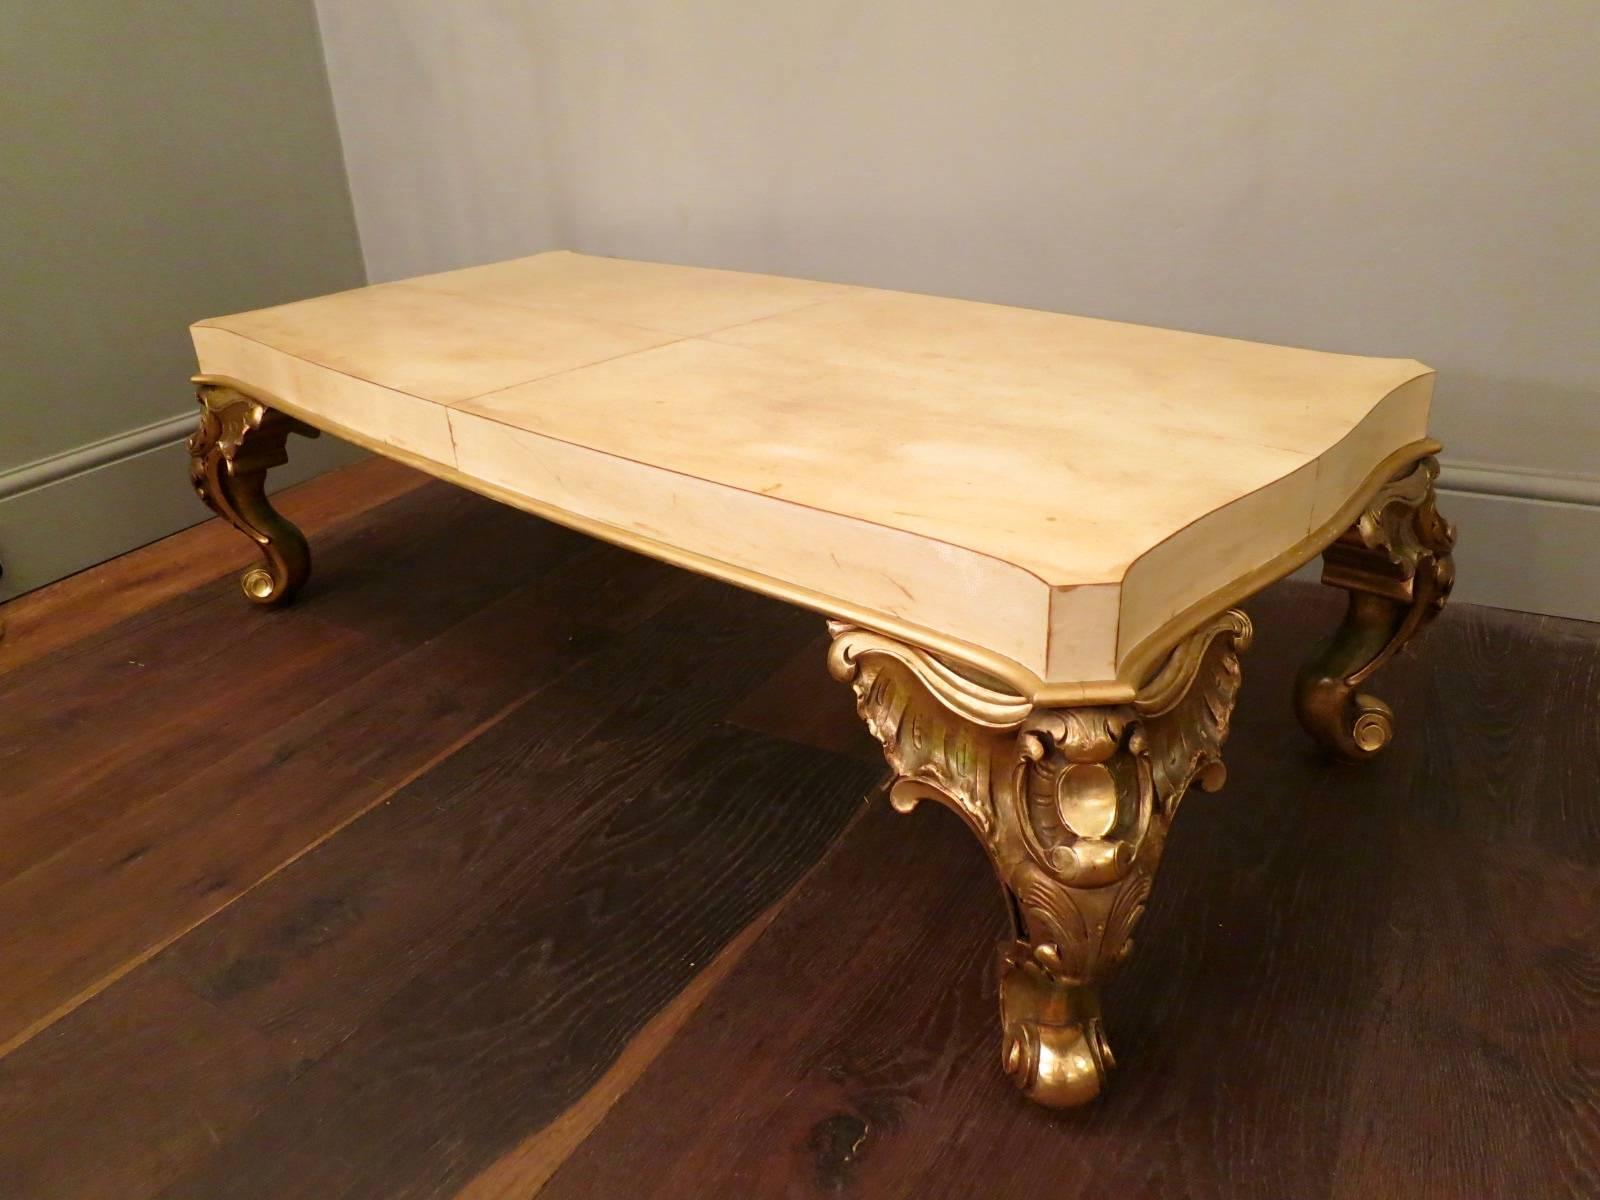 Ein sehr guter Tisch von Maison Jansen, mit aufwendigen vergoldeten Stützen im Rokoko-Stil und einer geformten Platte aus Pergament. Darunter gestempelt Jansen.